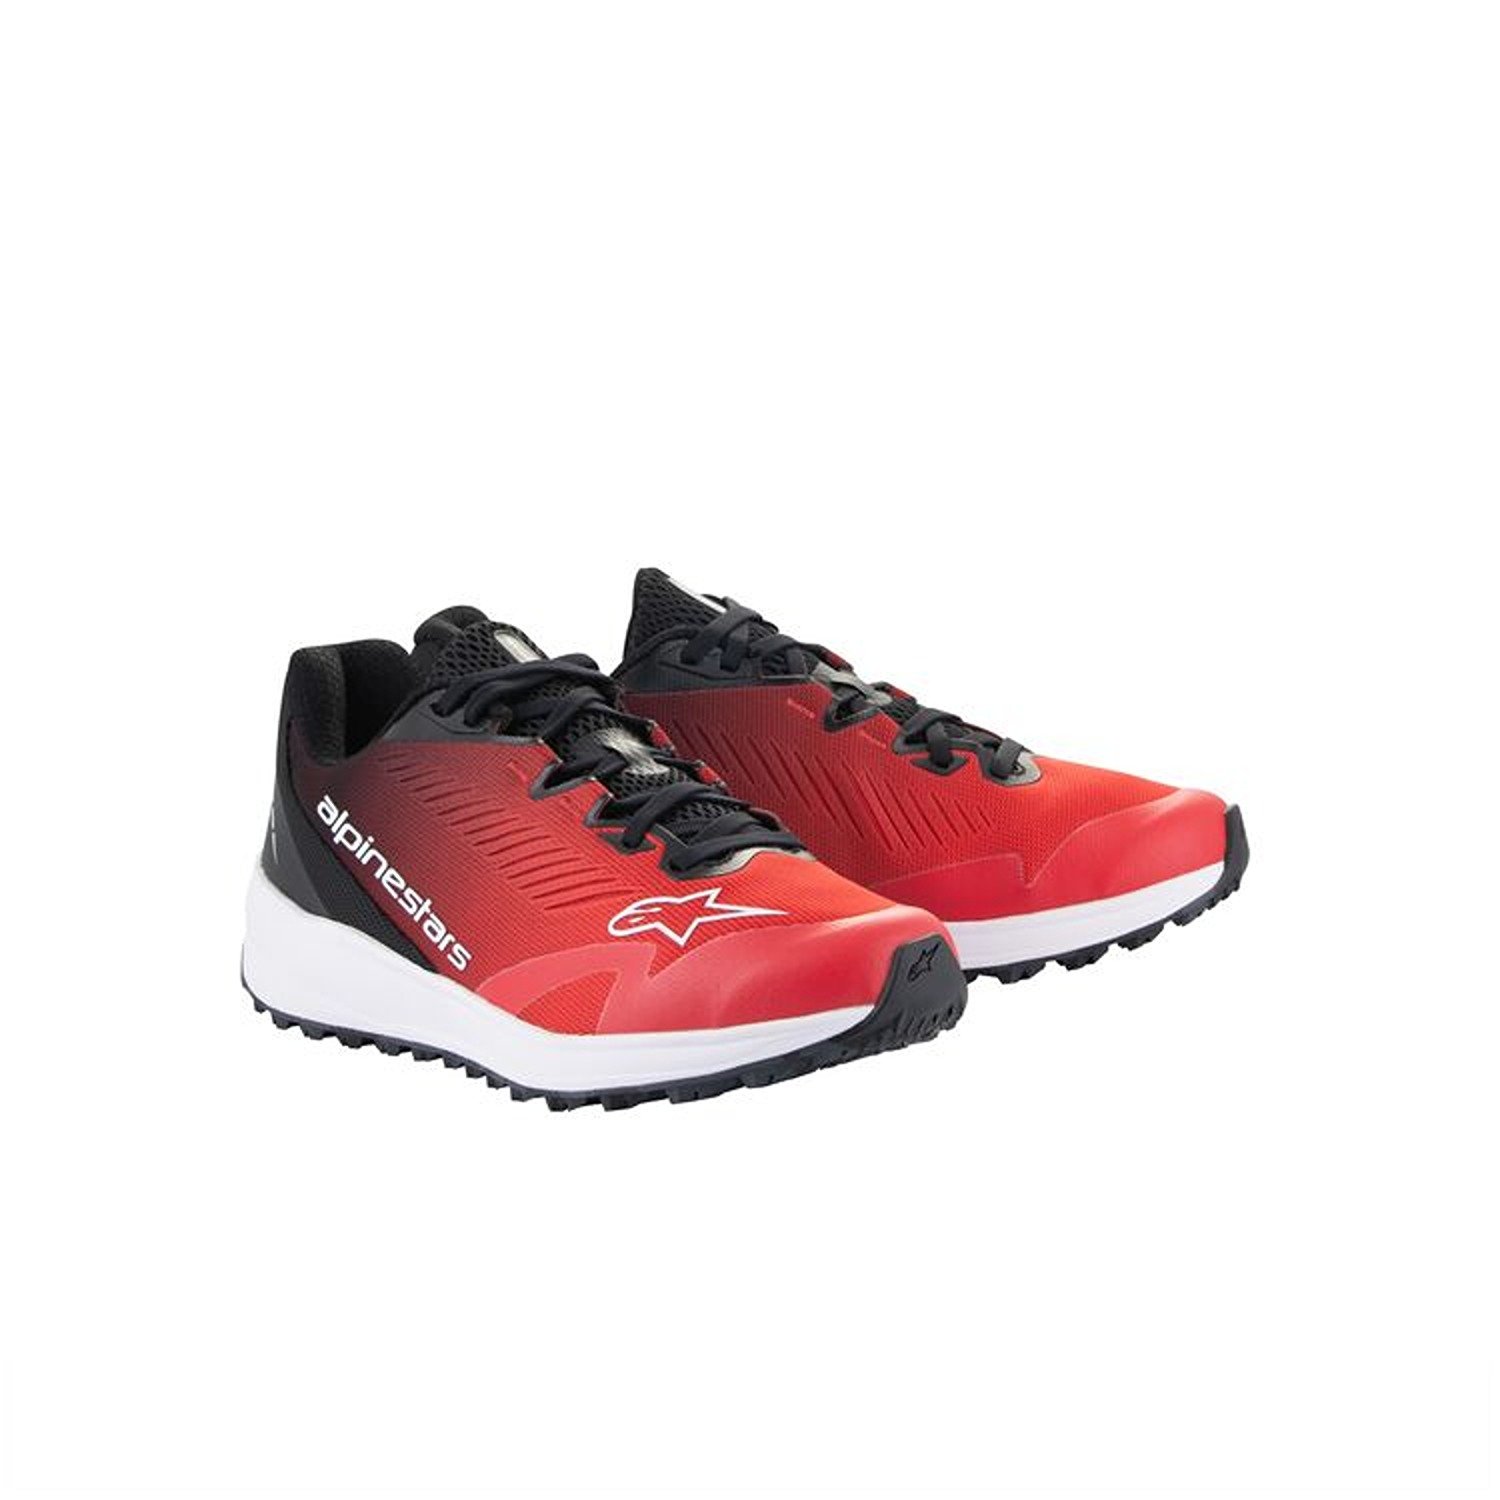 Image of Alpinestars Meta Road V2 Shoes Red Black White Größe US 10